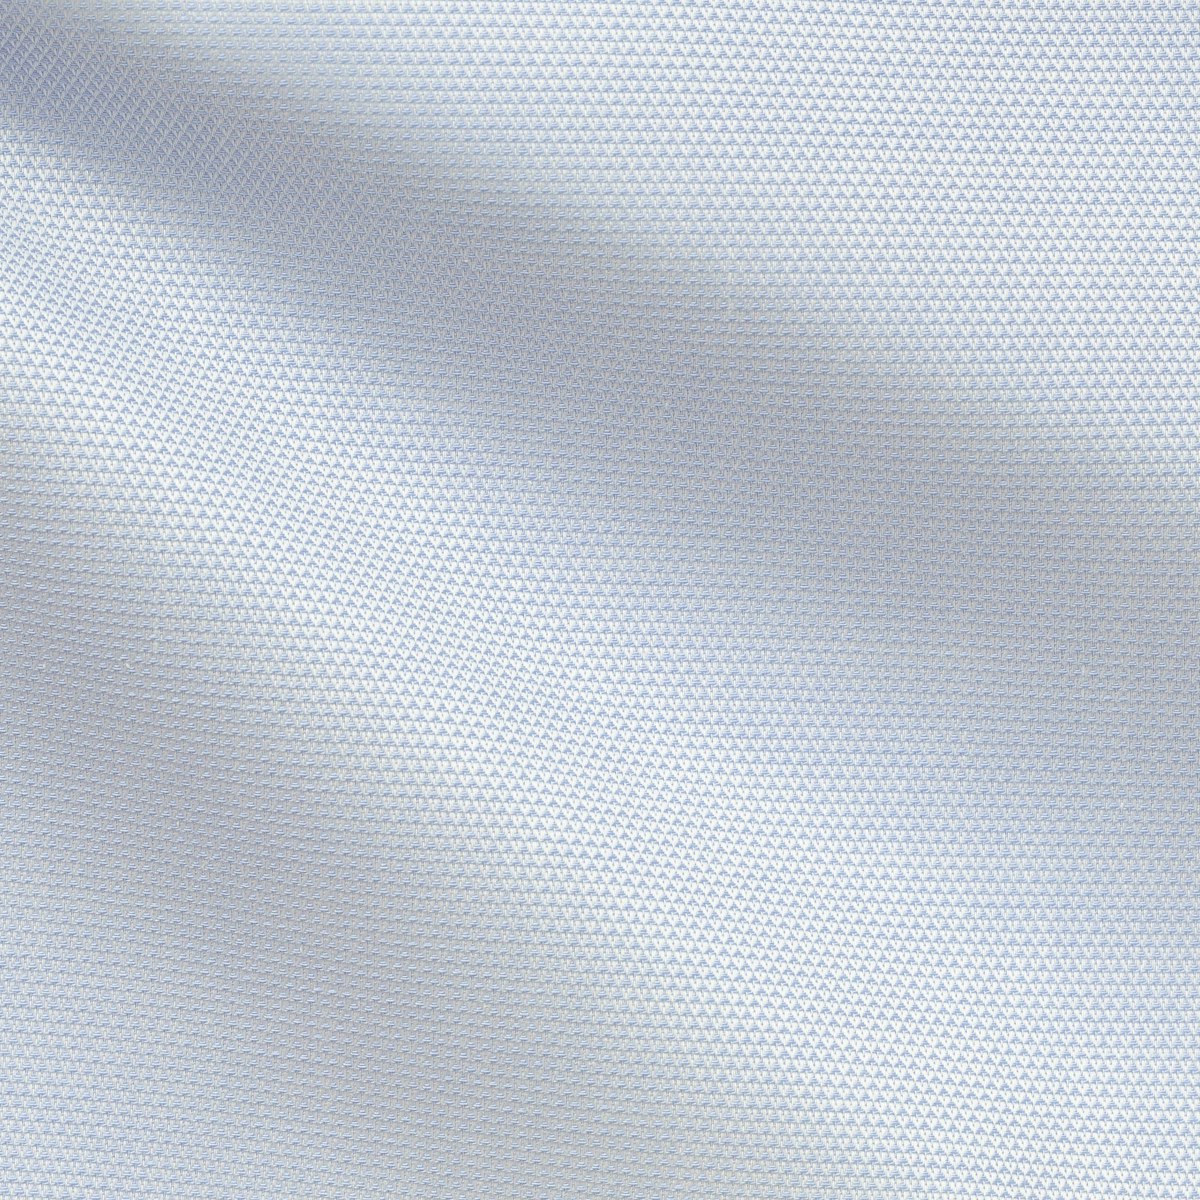 InStitchu Shirt Fabric 59